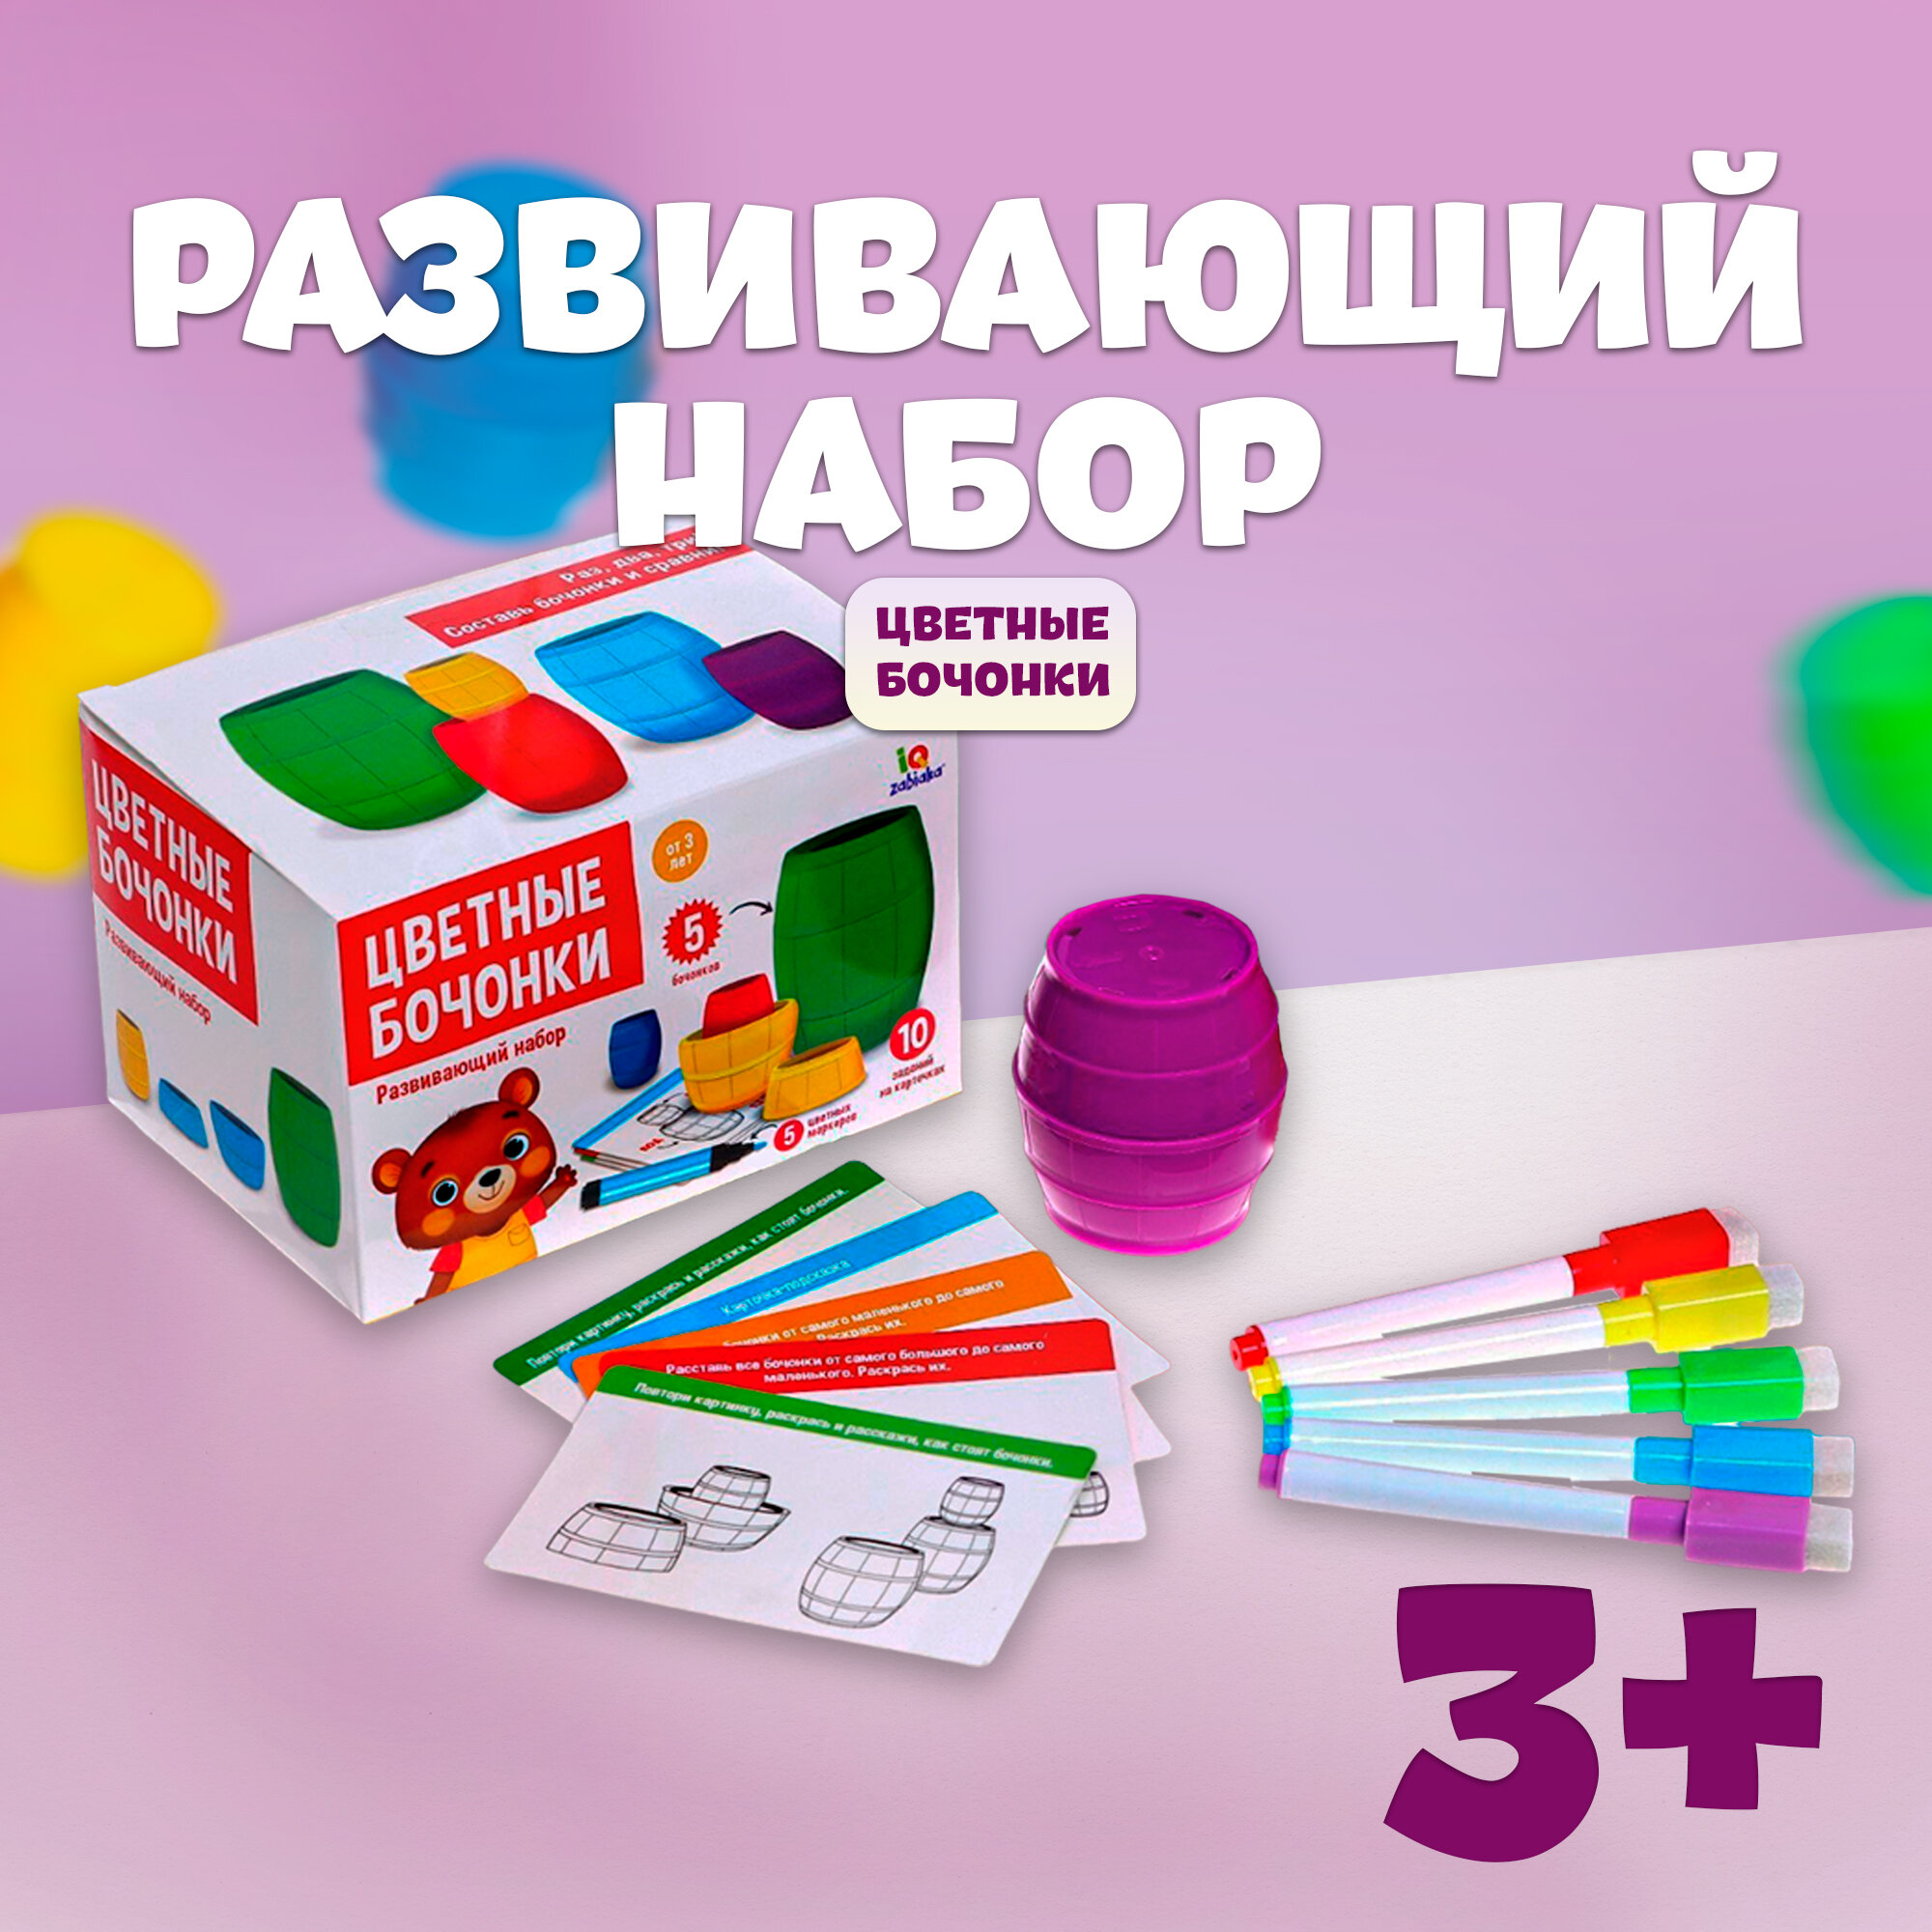 Набор «Цветные бочонки», развивающий, по типу матрёшки, 5 бочонков, 10 заданий, 5 маркеров в комплекте, карточки пиши-стирай, для детей и малышей